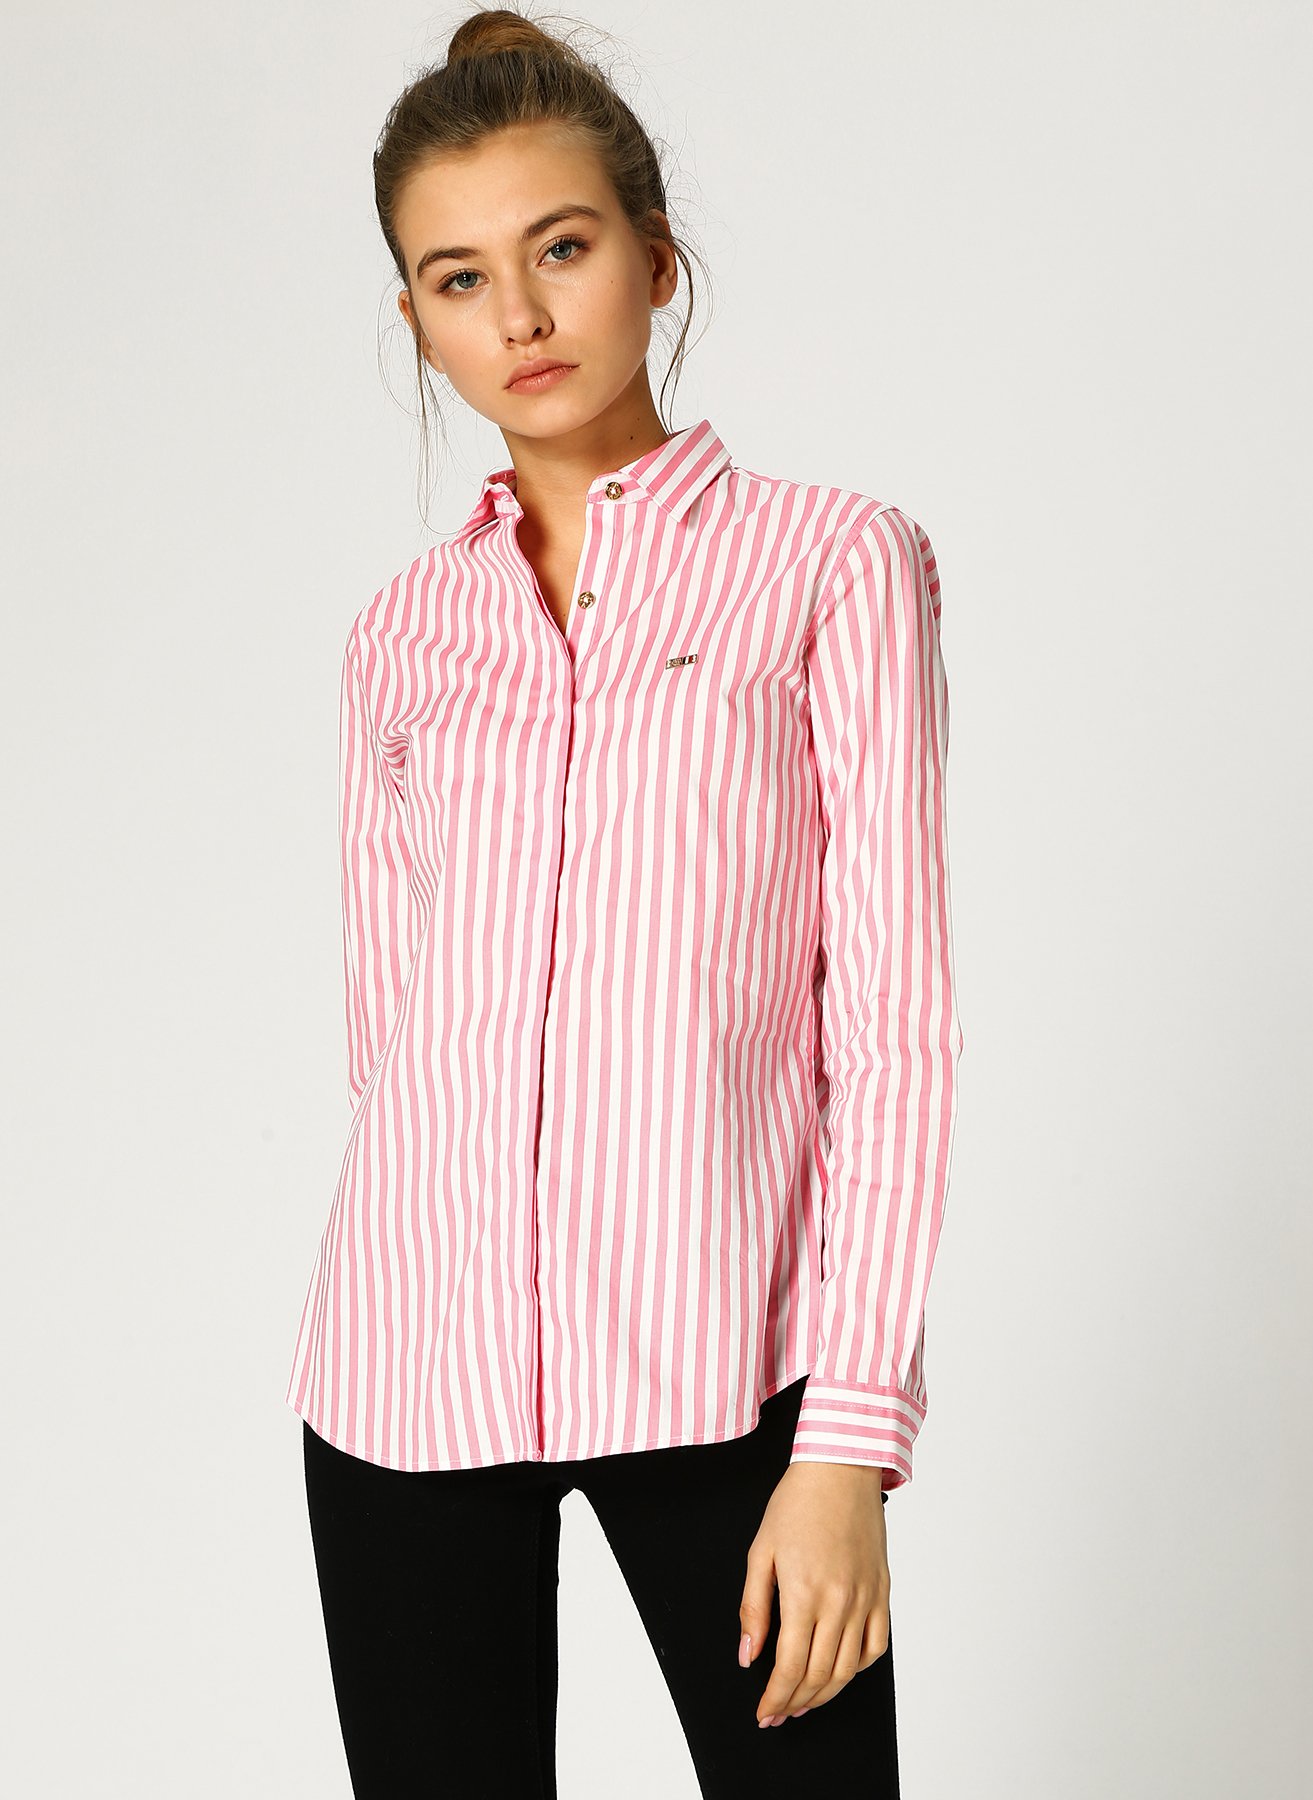 Розовая рубашка в полоску. Polo Assn розовая рубашка. Рубашка женская розовая Polo Assn. U.S.. Рубашка Polo Assn женская розовая. Polo Assn женская рубашка в полоску.